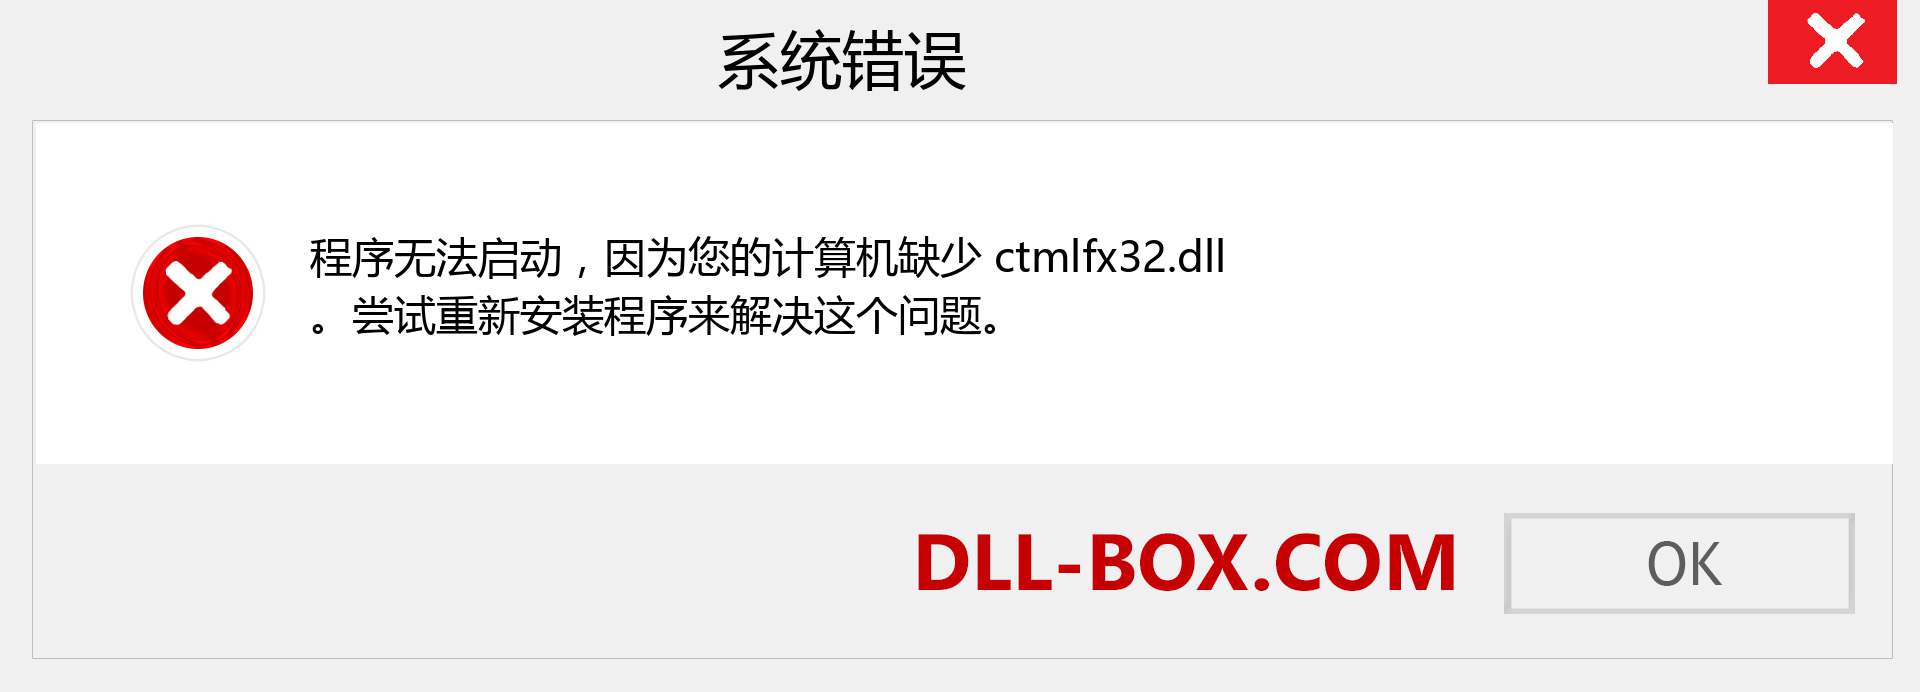 ctmlfx32.dll 文件丢失？。 适用于 Windows 7、8、10 的下载 - 修复 Windows、照片、图像上的 ctmlfx32 dll 丢失错误